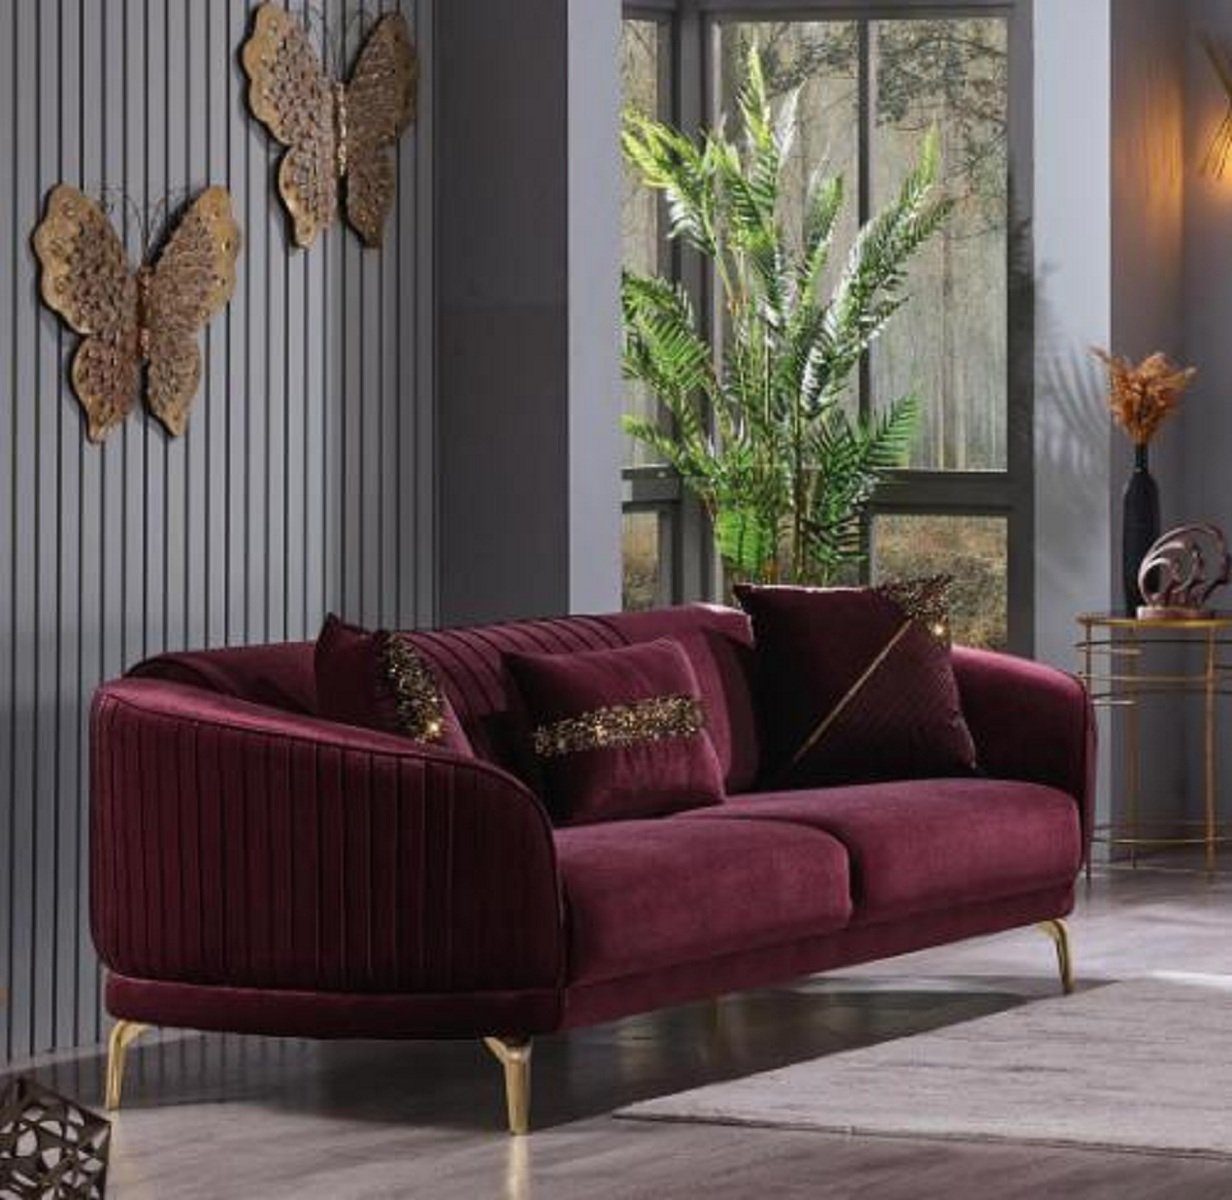 JVmoebel 3-Sitzer 3-Sitzer Luxus Sofas Wohnzimmer Polstermöbel Textil Couch Sofa Samt, 1 Teile, Made in Europa